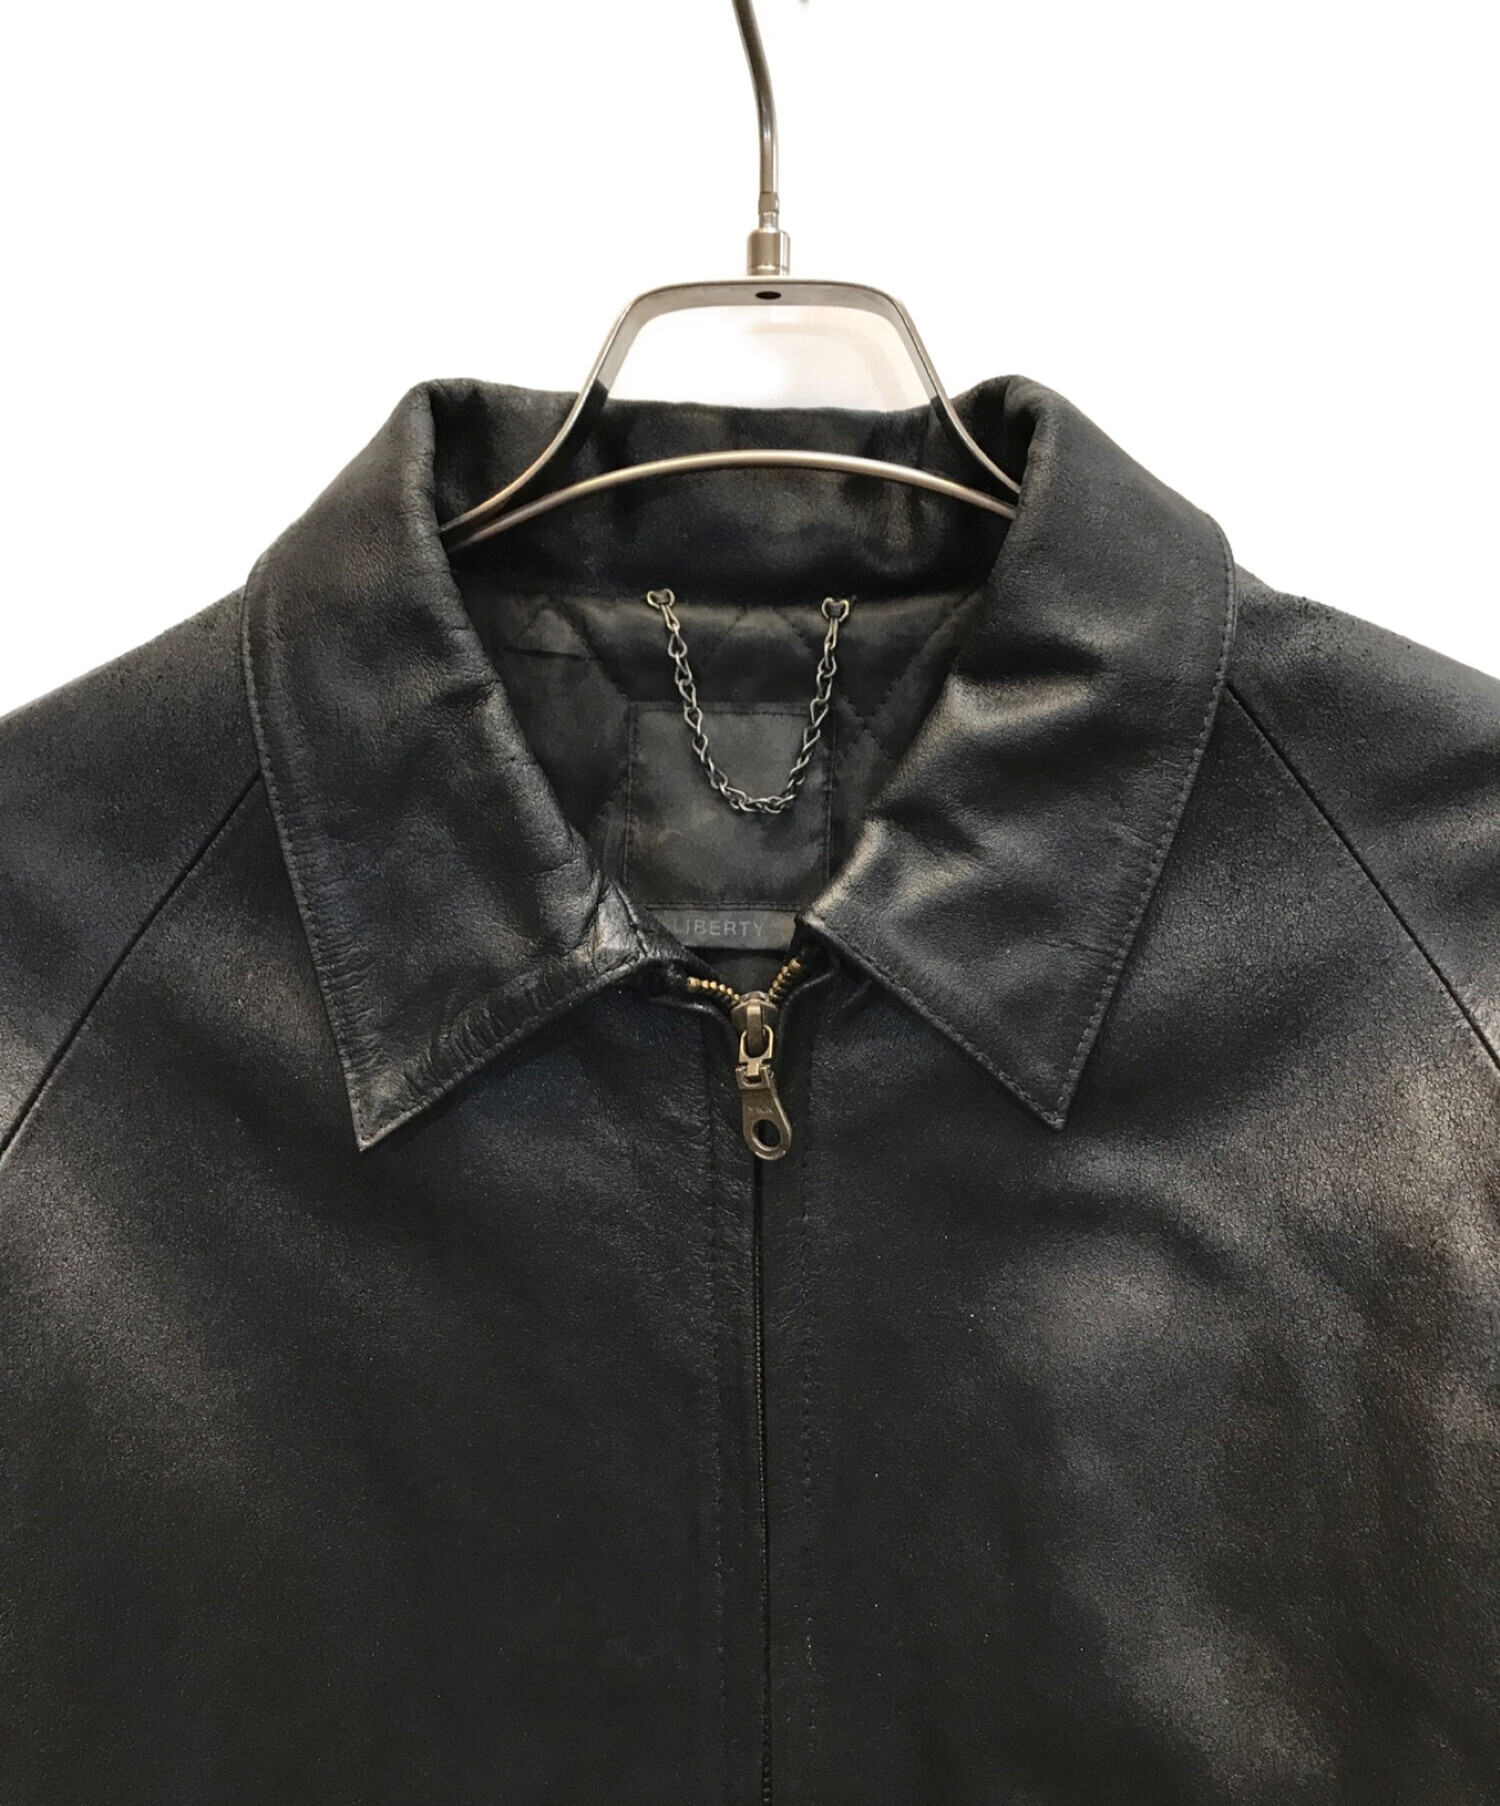 NEXUS7 (ネクサスセブン) メデューサデザインレザージャケット ブラック サイズ:表記なし